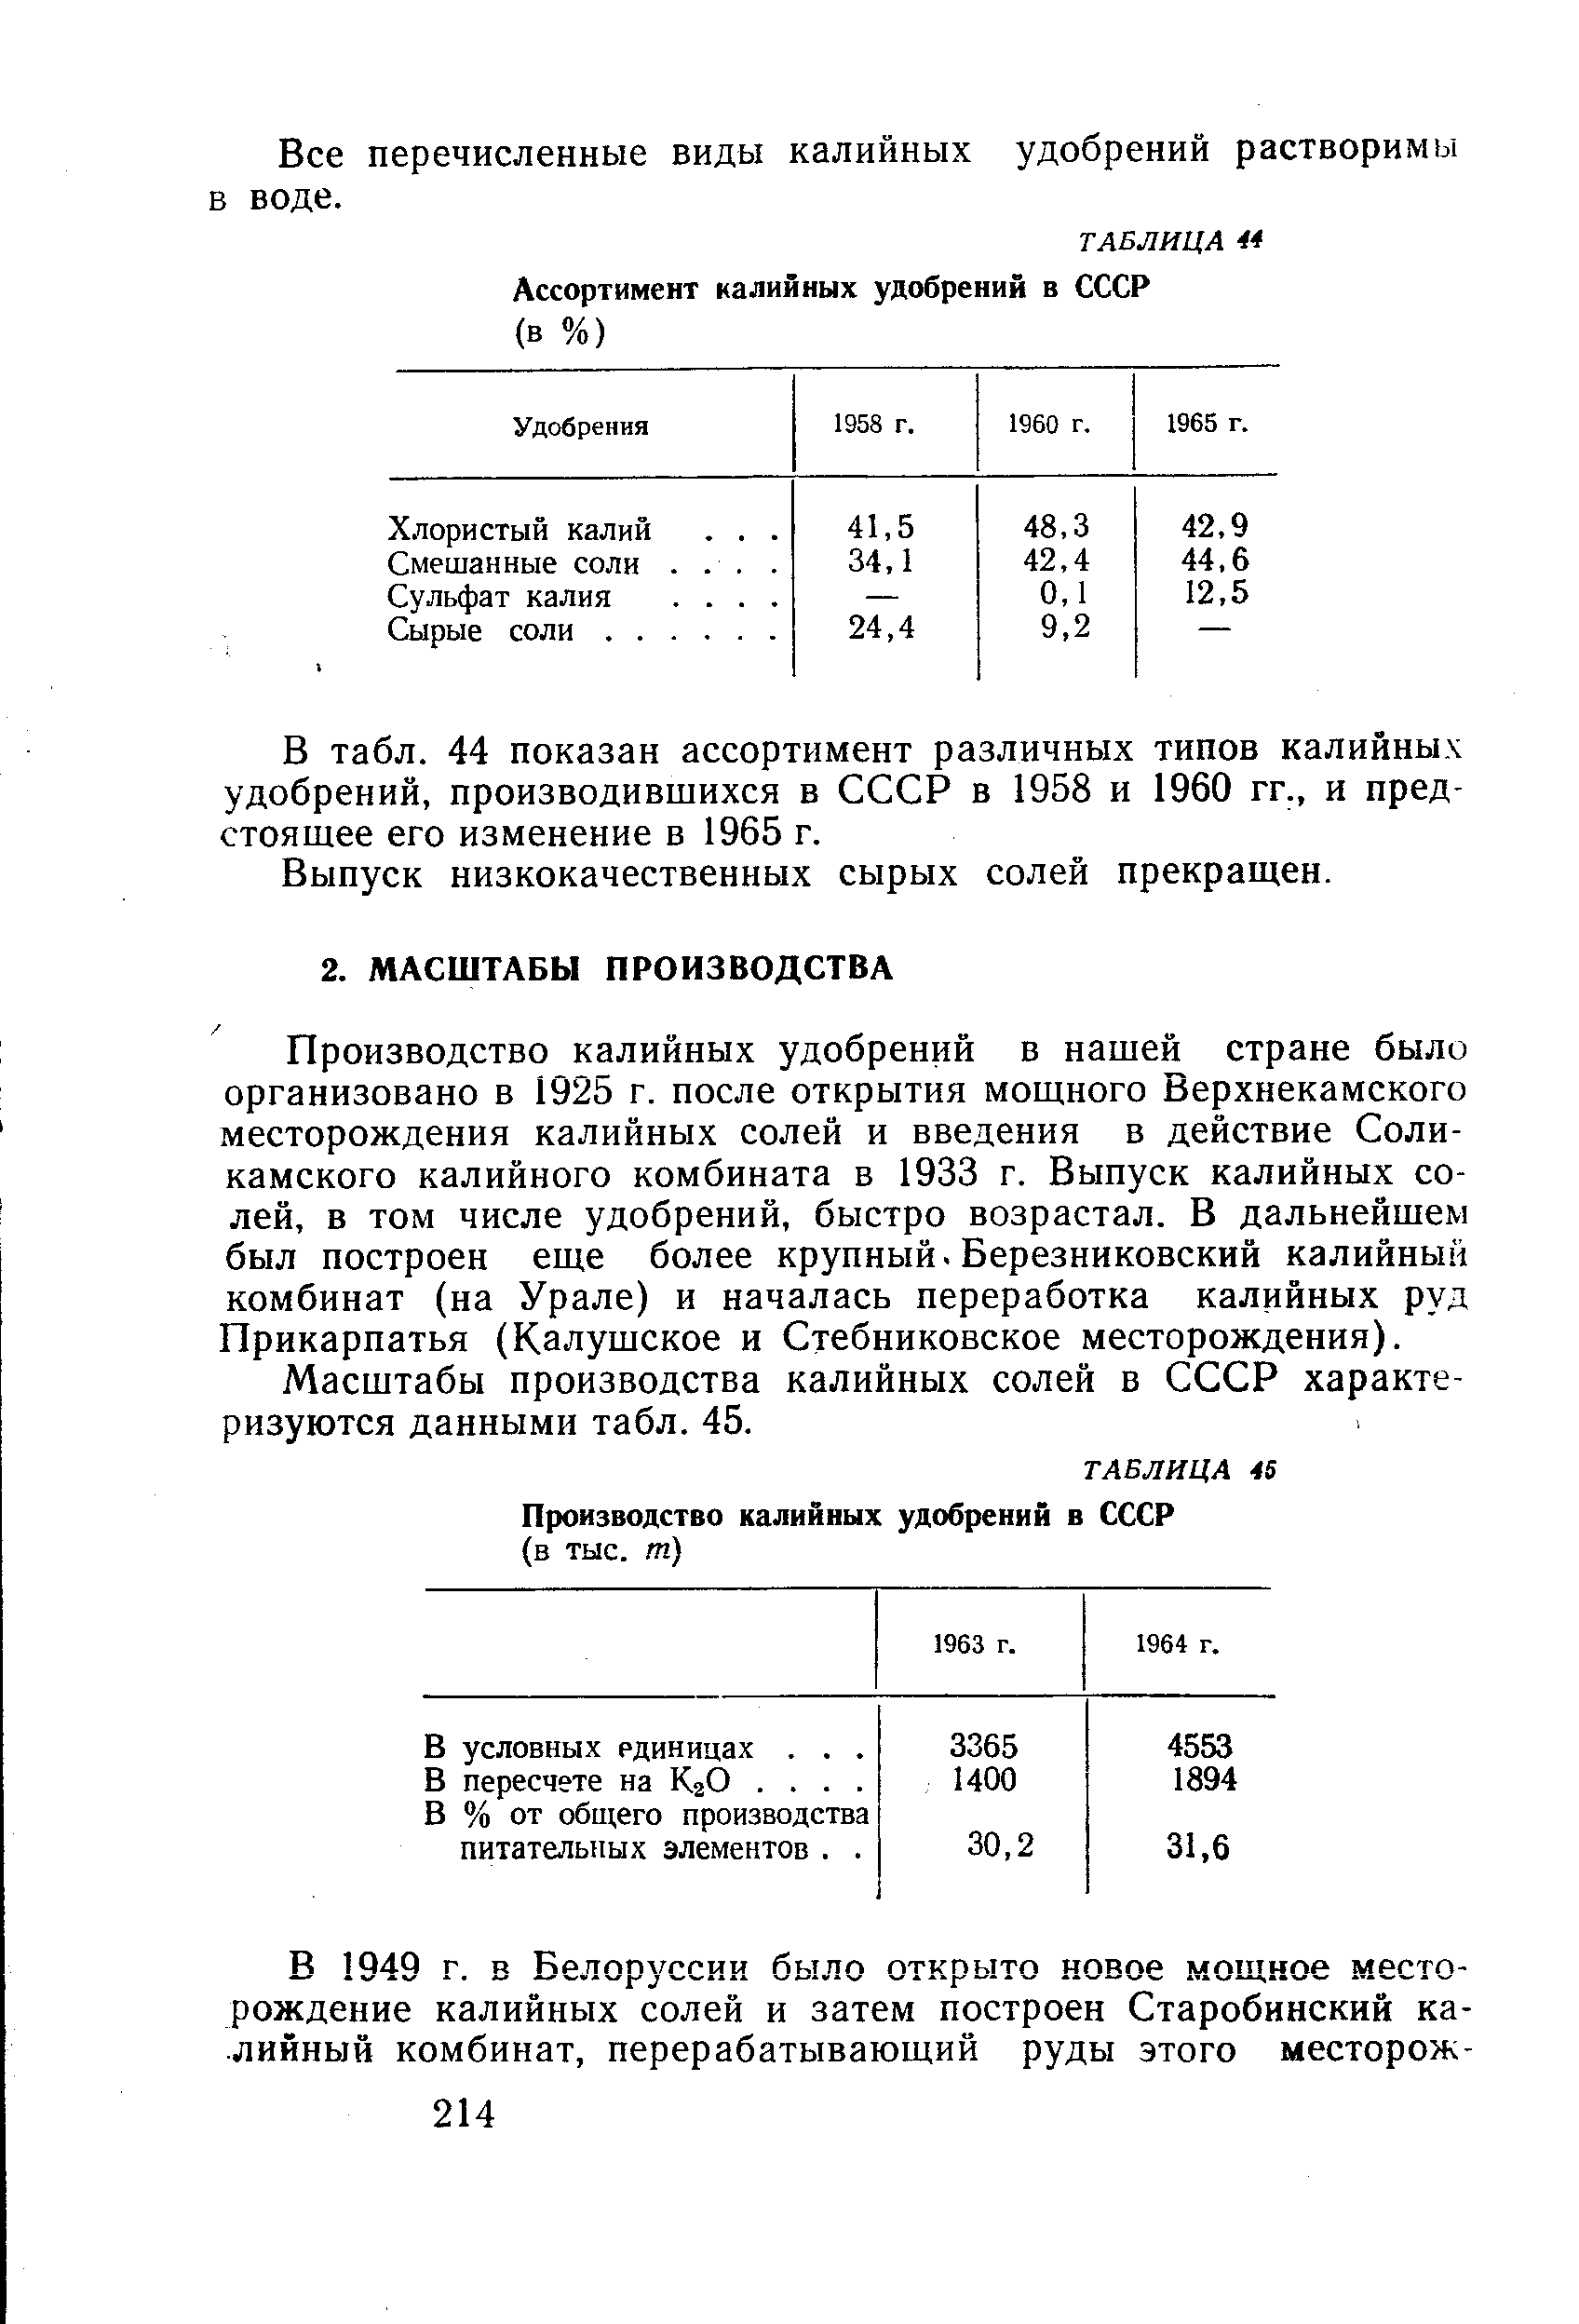 Масштабы производства калийных солей в СССР характеризуются данными табл. 45.